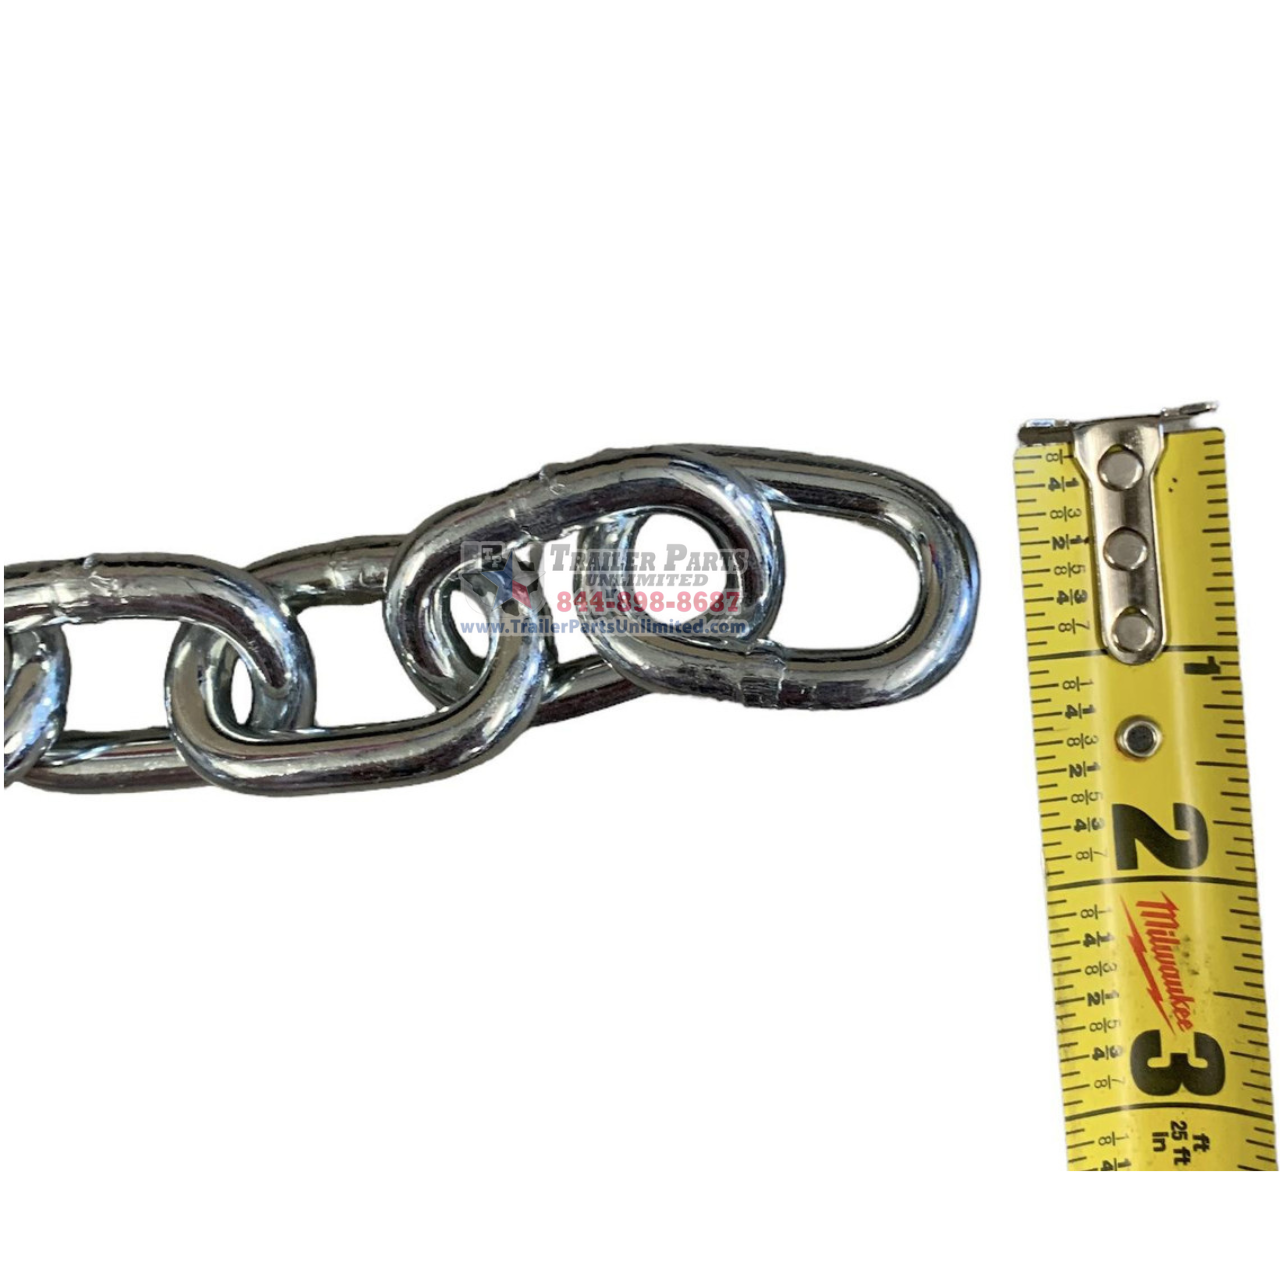 30 x 5-16 Trailer Safety Chain w- 1 Safety Latch Hook G30 7.6k Cap.